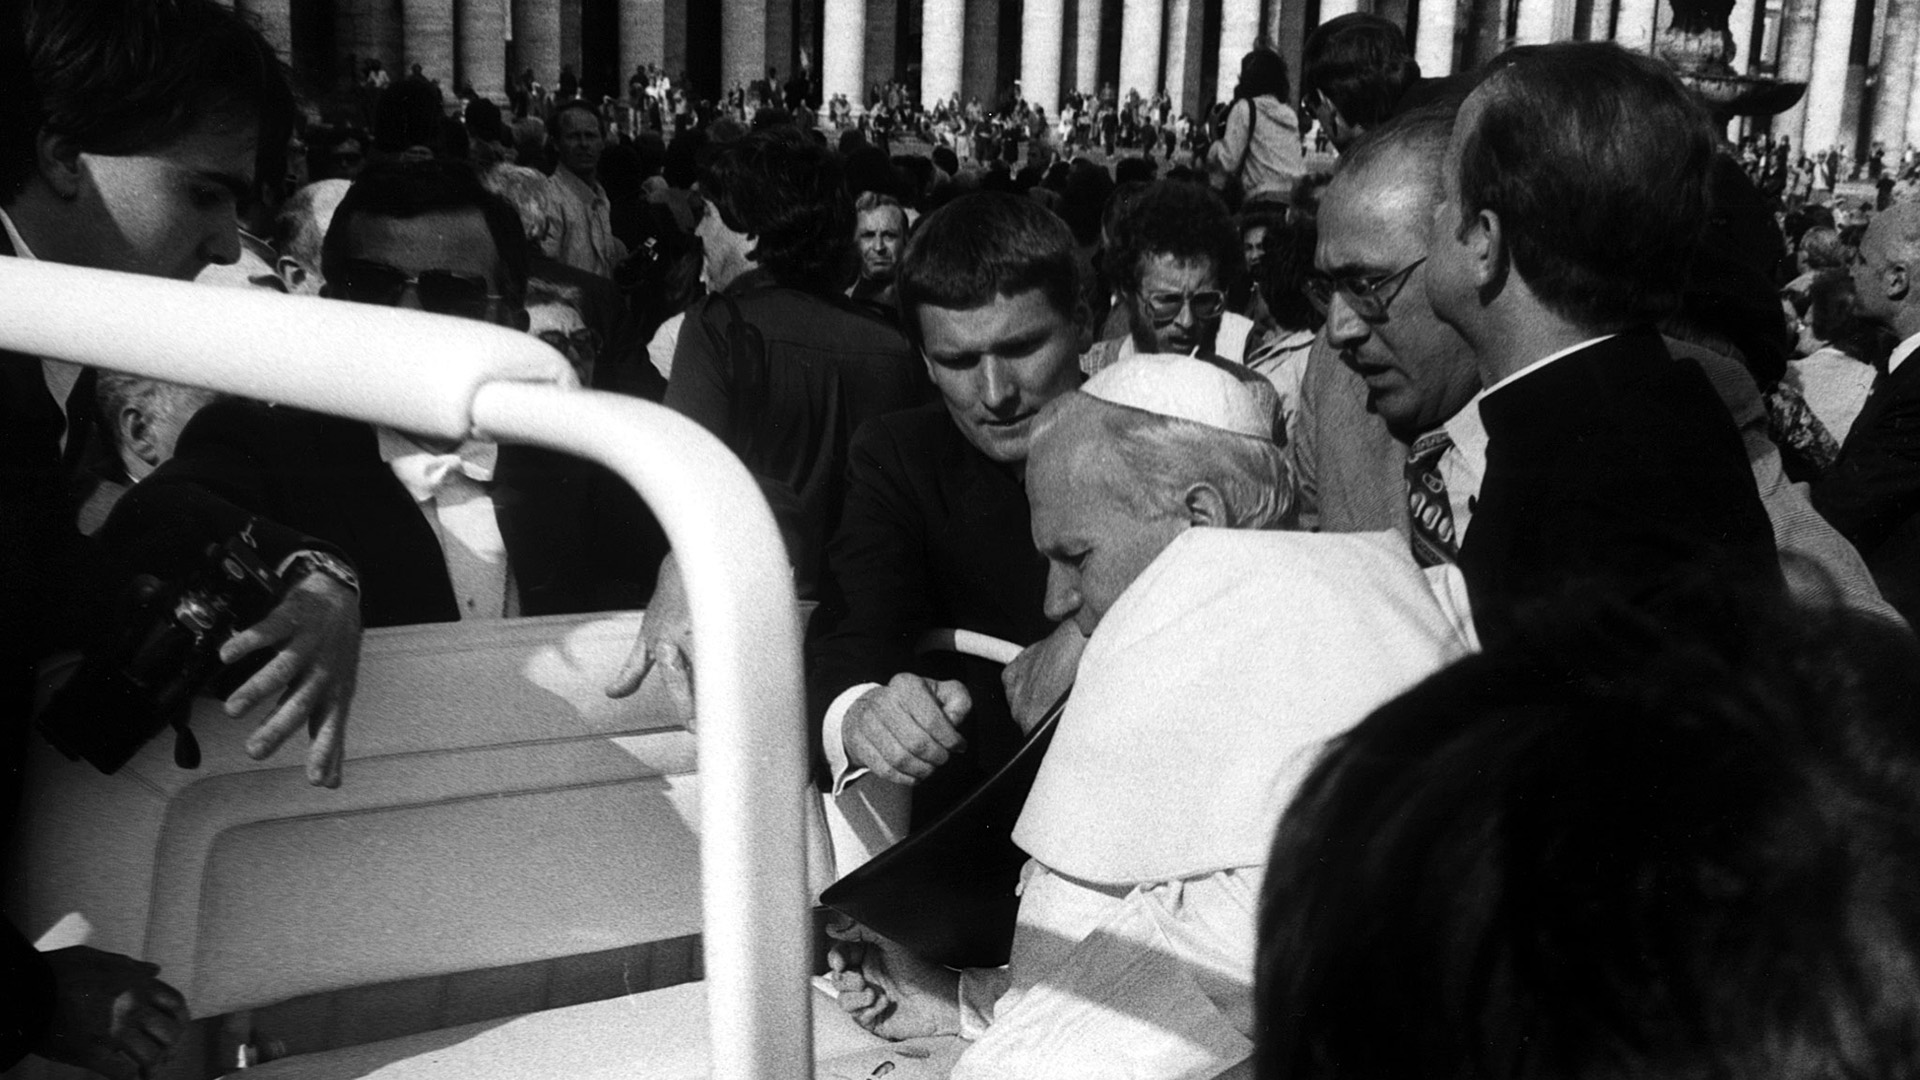 Agca le disparó a Juan Pablo II en el abdomen, la mano y el brazo (Reuters)